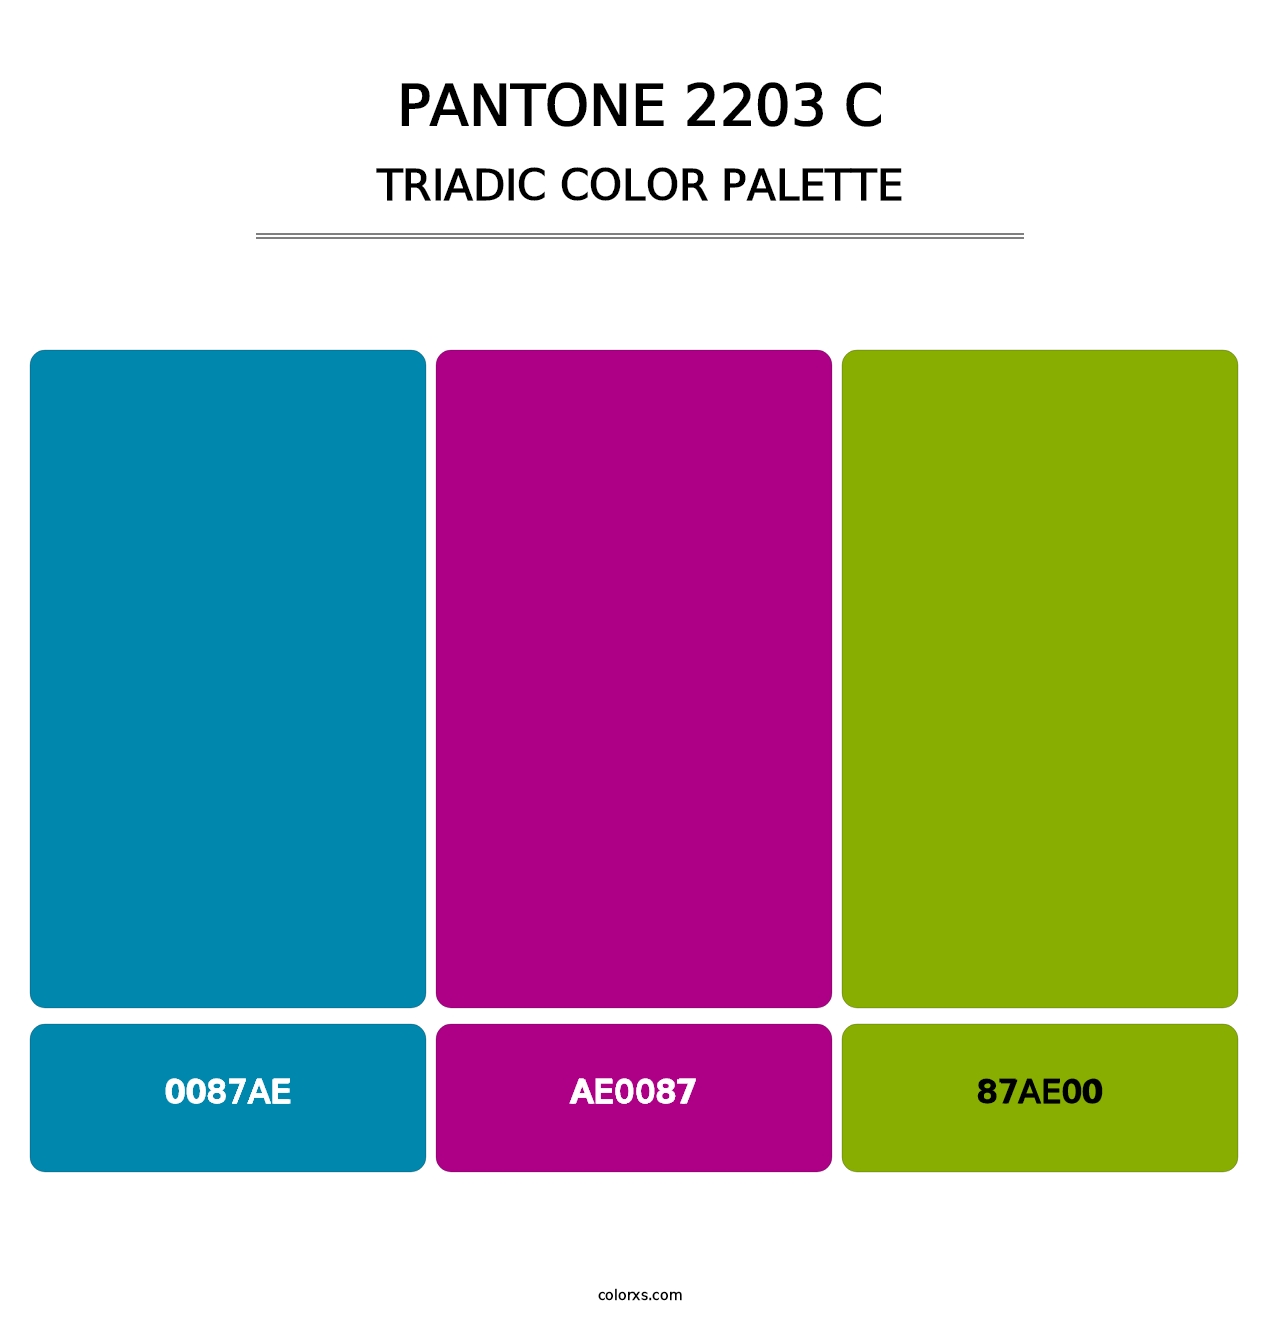 PANTONE 2203 C - Triadic Color Palette